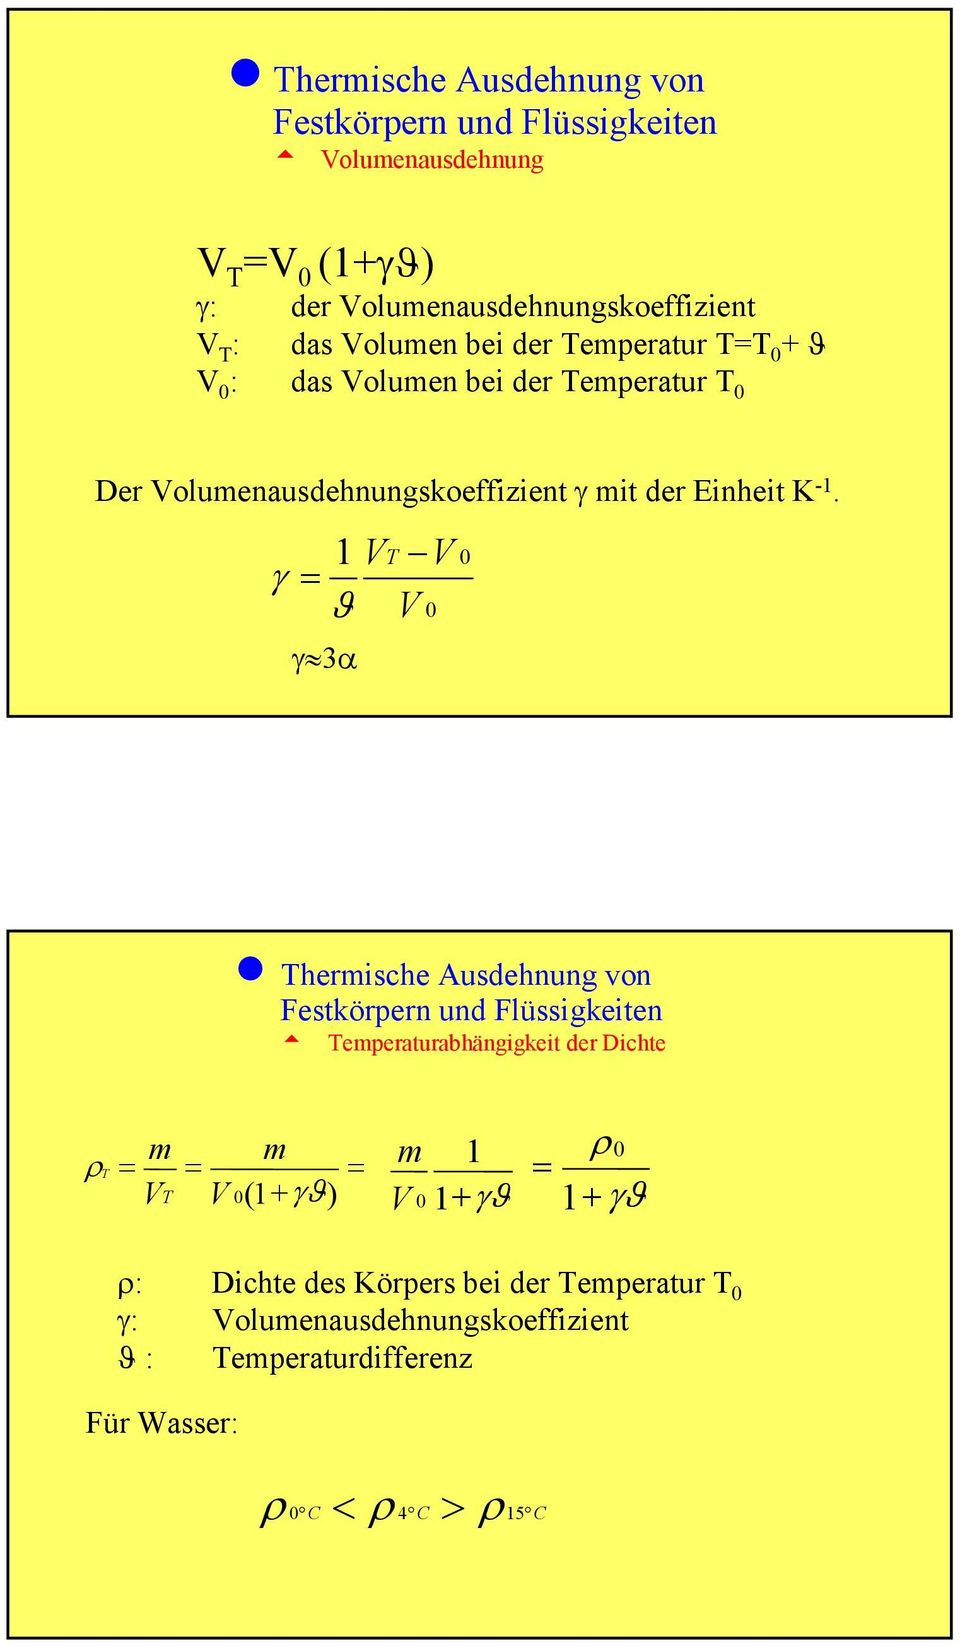 1 γ = ϑ γ 3α V V V n hermische Ausdehnung von Festkörpern und Flüssigkeiten t emperaturabhängigkeit der Dichte ρ = m V m = = V (1 + γϑ)